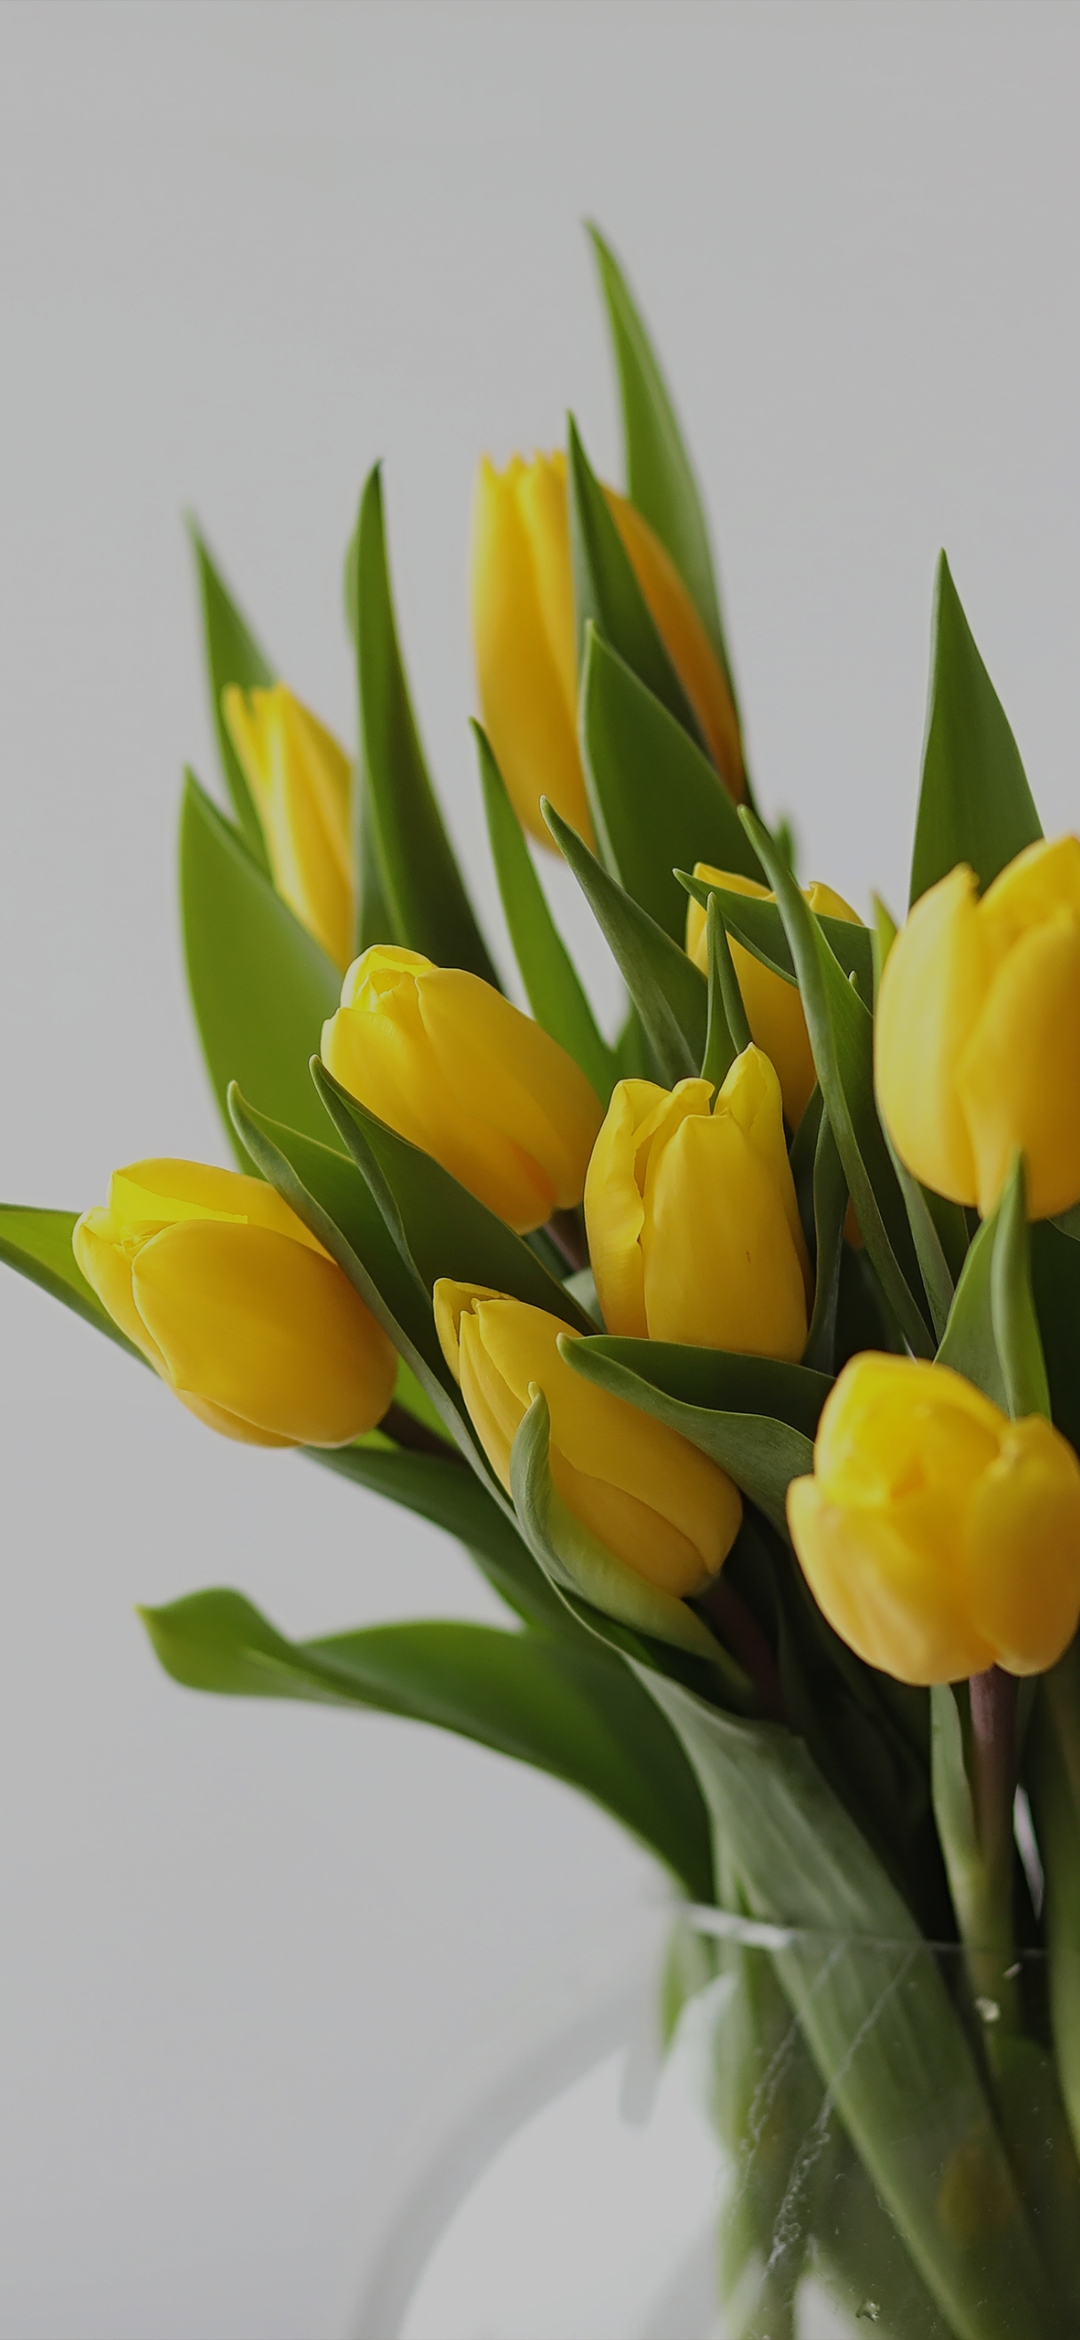 Yellow Tulip flowers